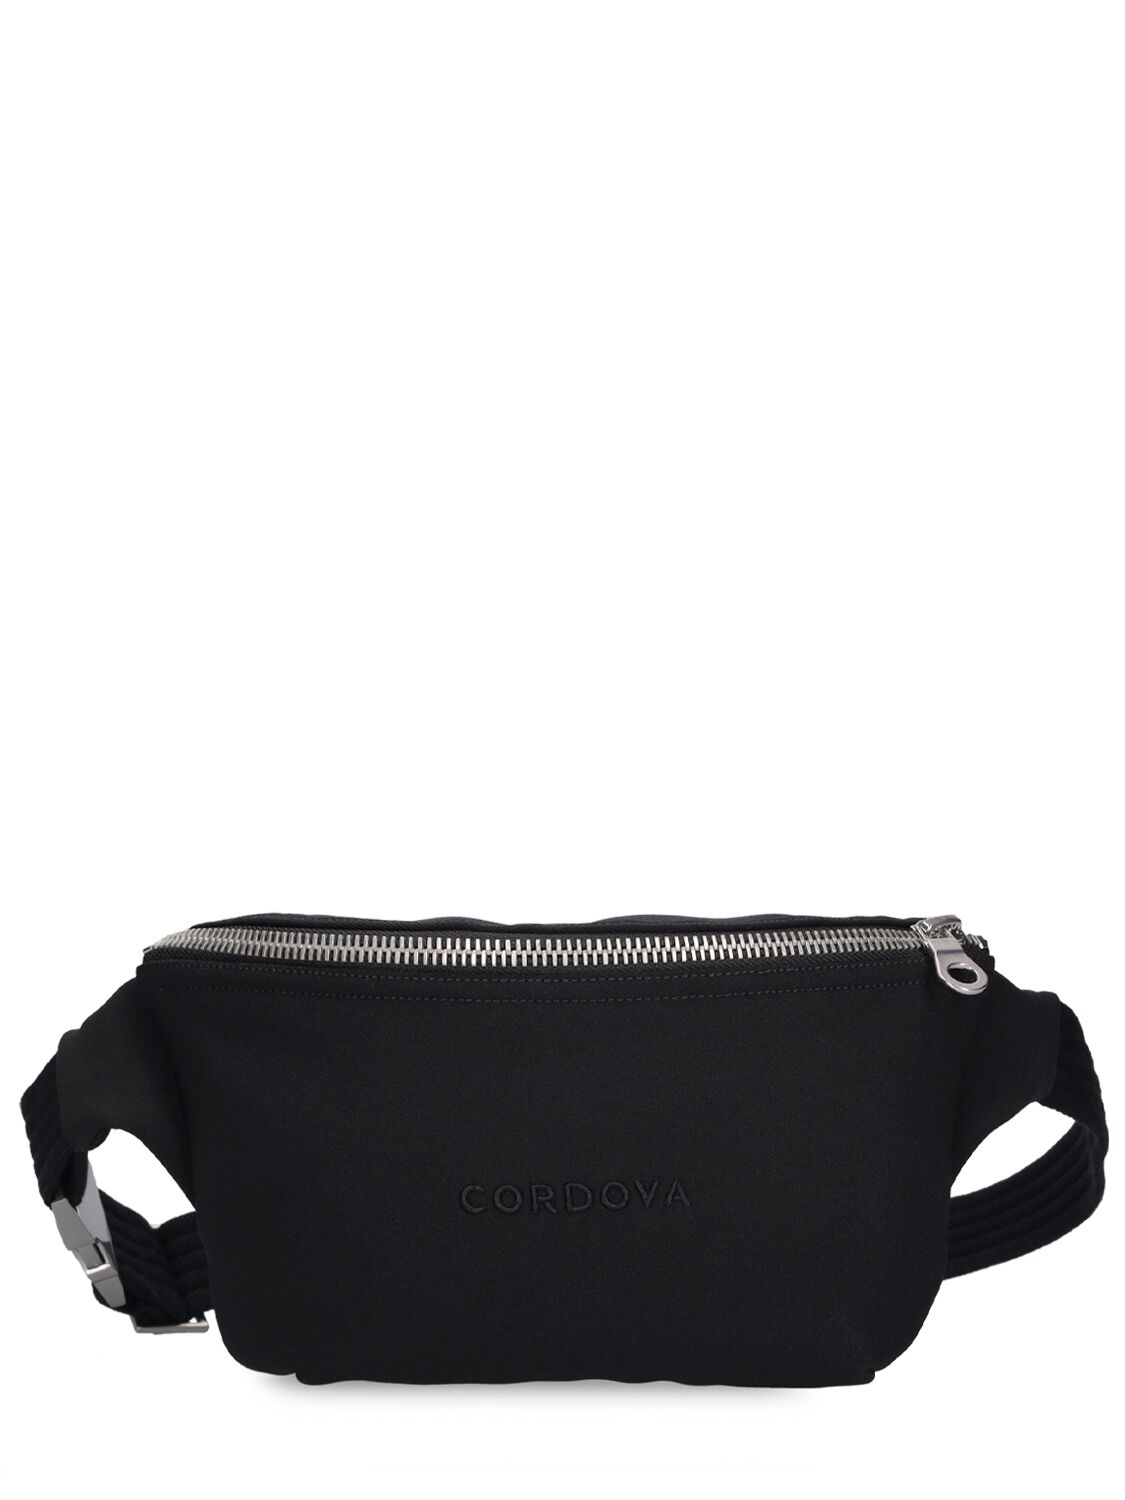 Cordova Belt Bag In Black